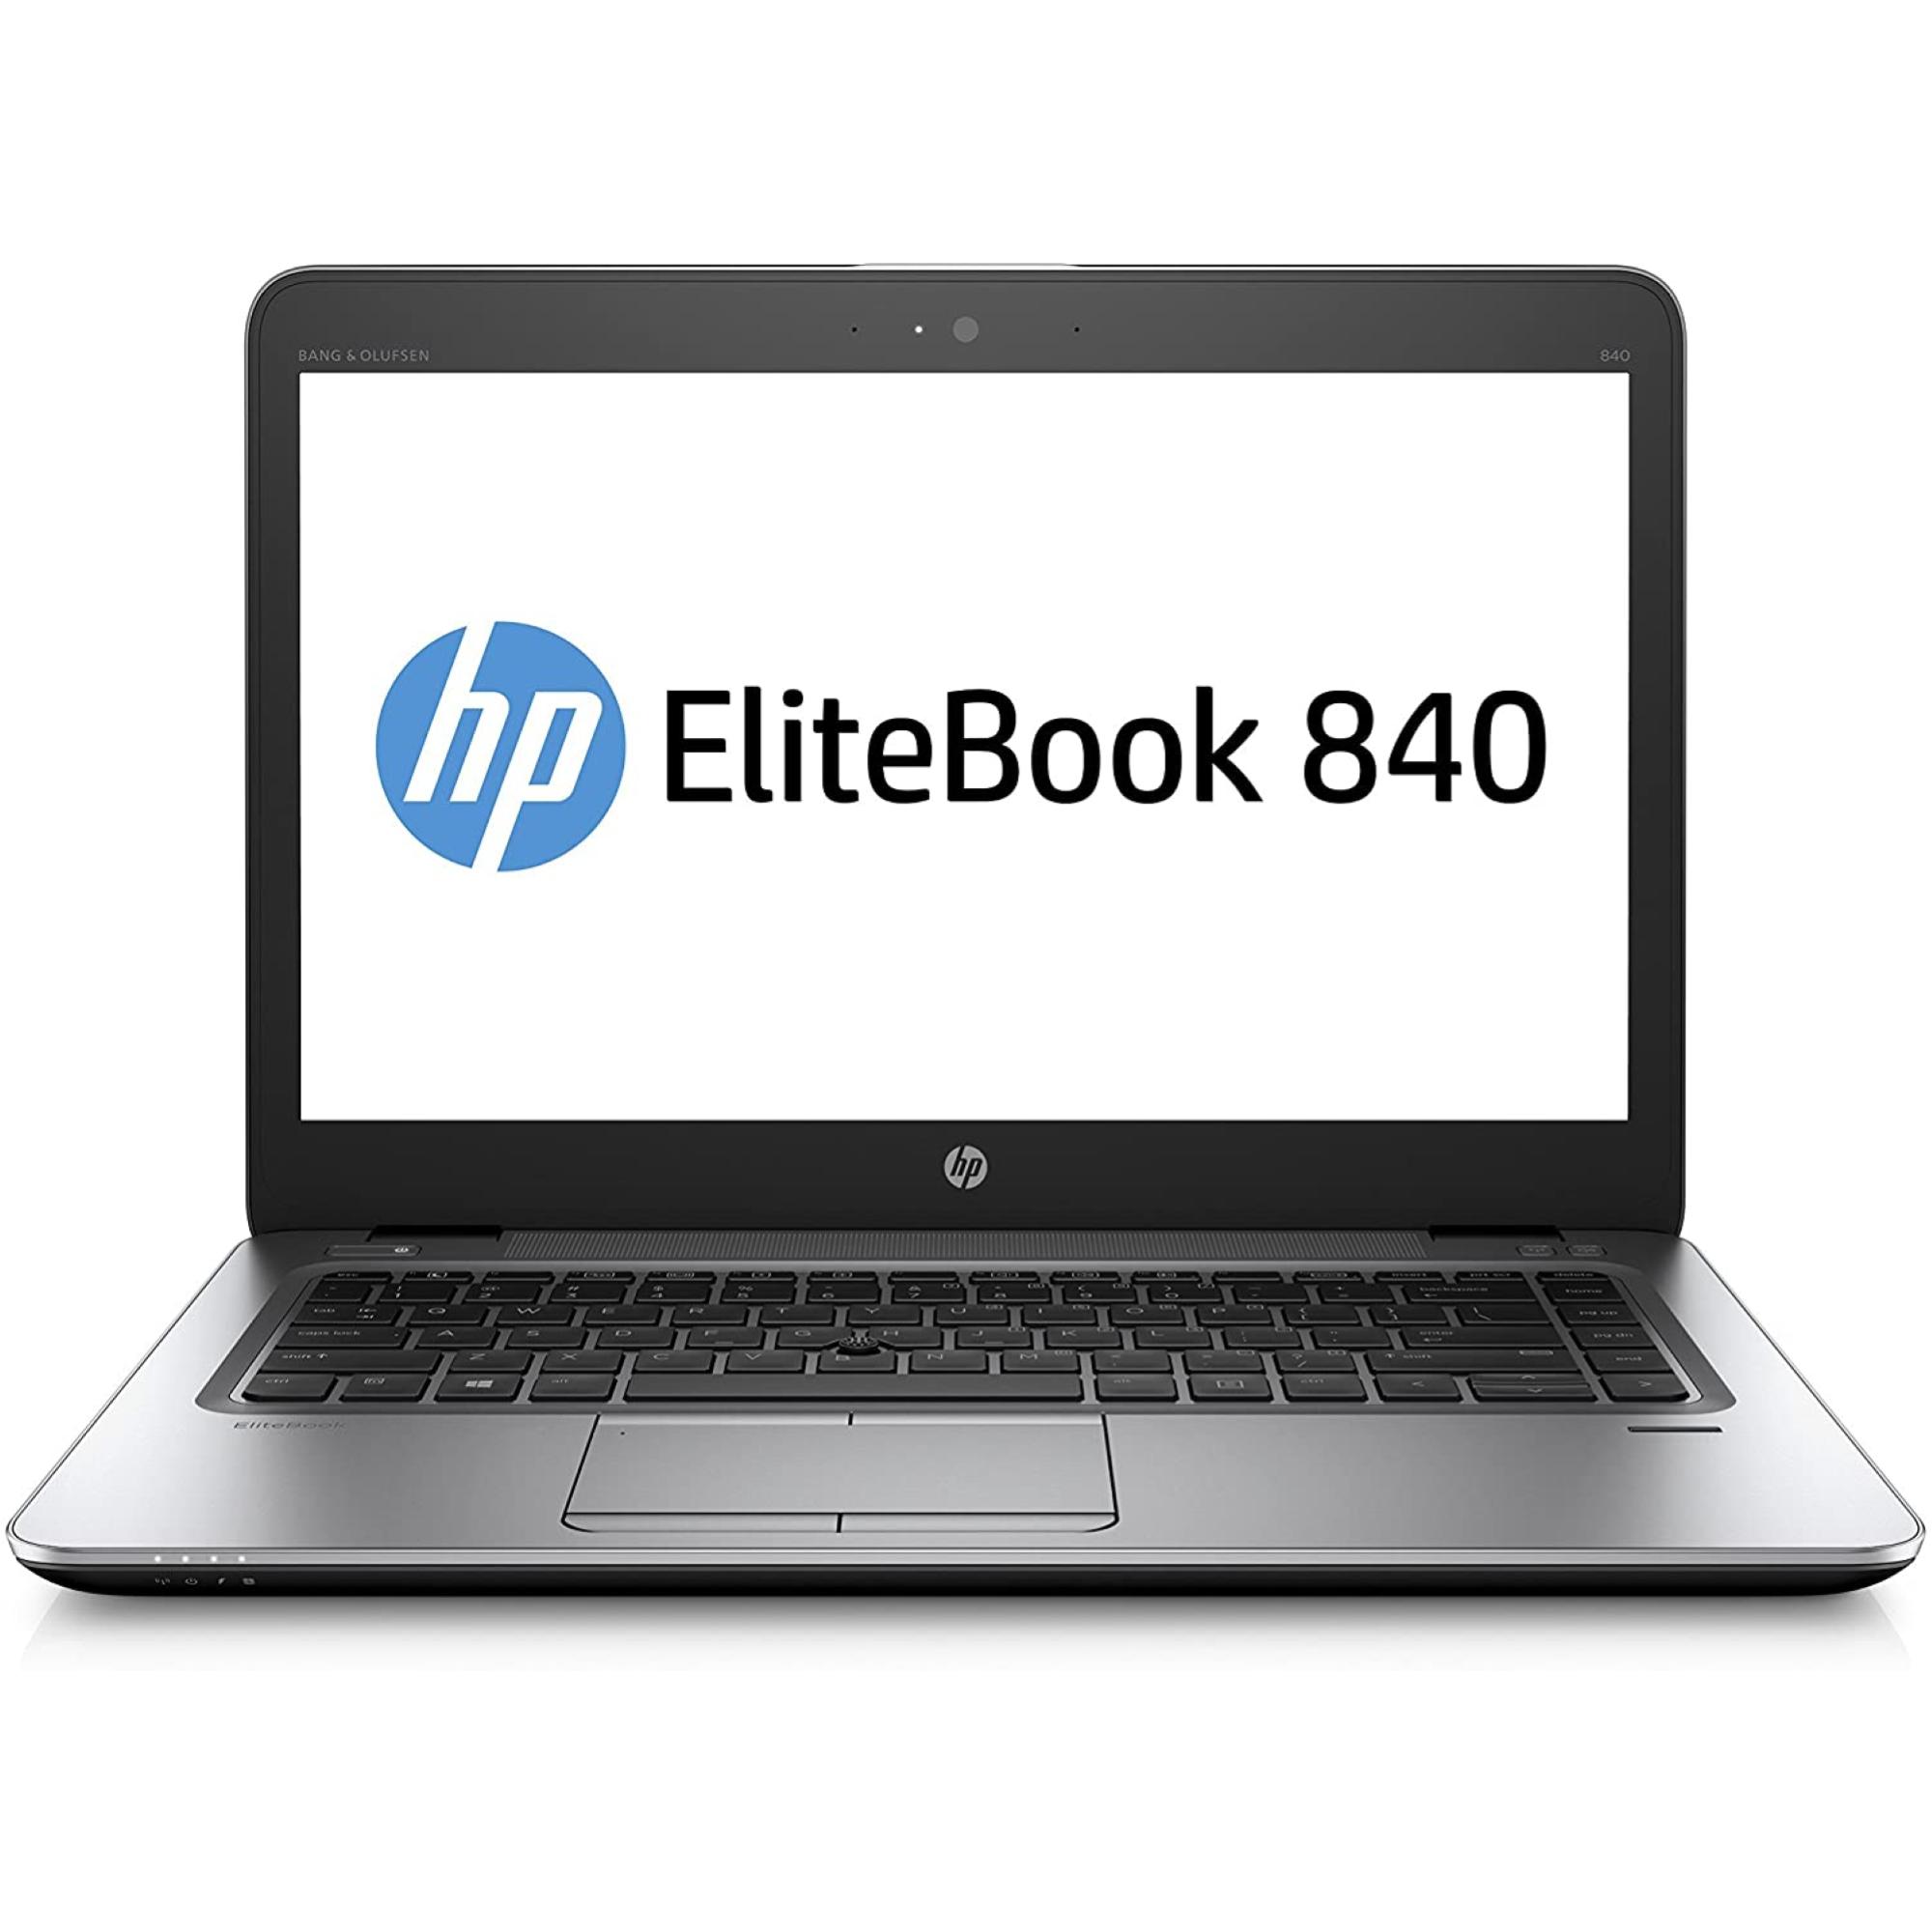 HP ELITEBOOK 840 G2 / I7-5600U / 180SSD / 8GB / 14.1″ / INTEL HD 5500 / HSDPA / W10P